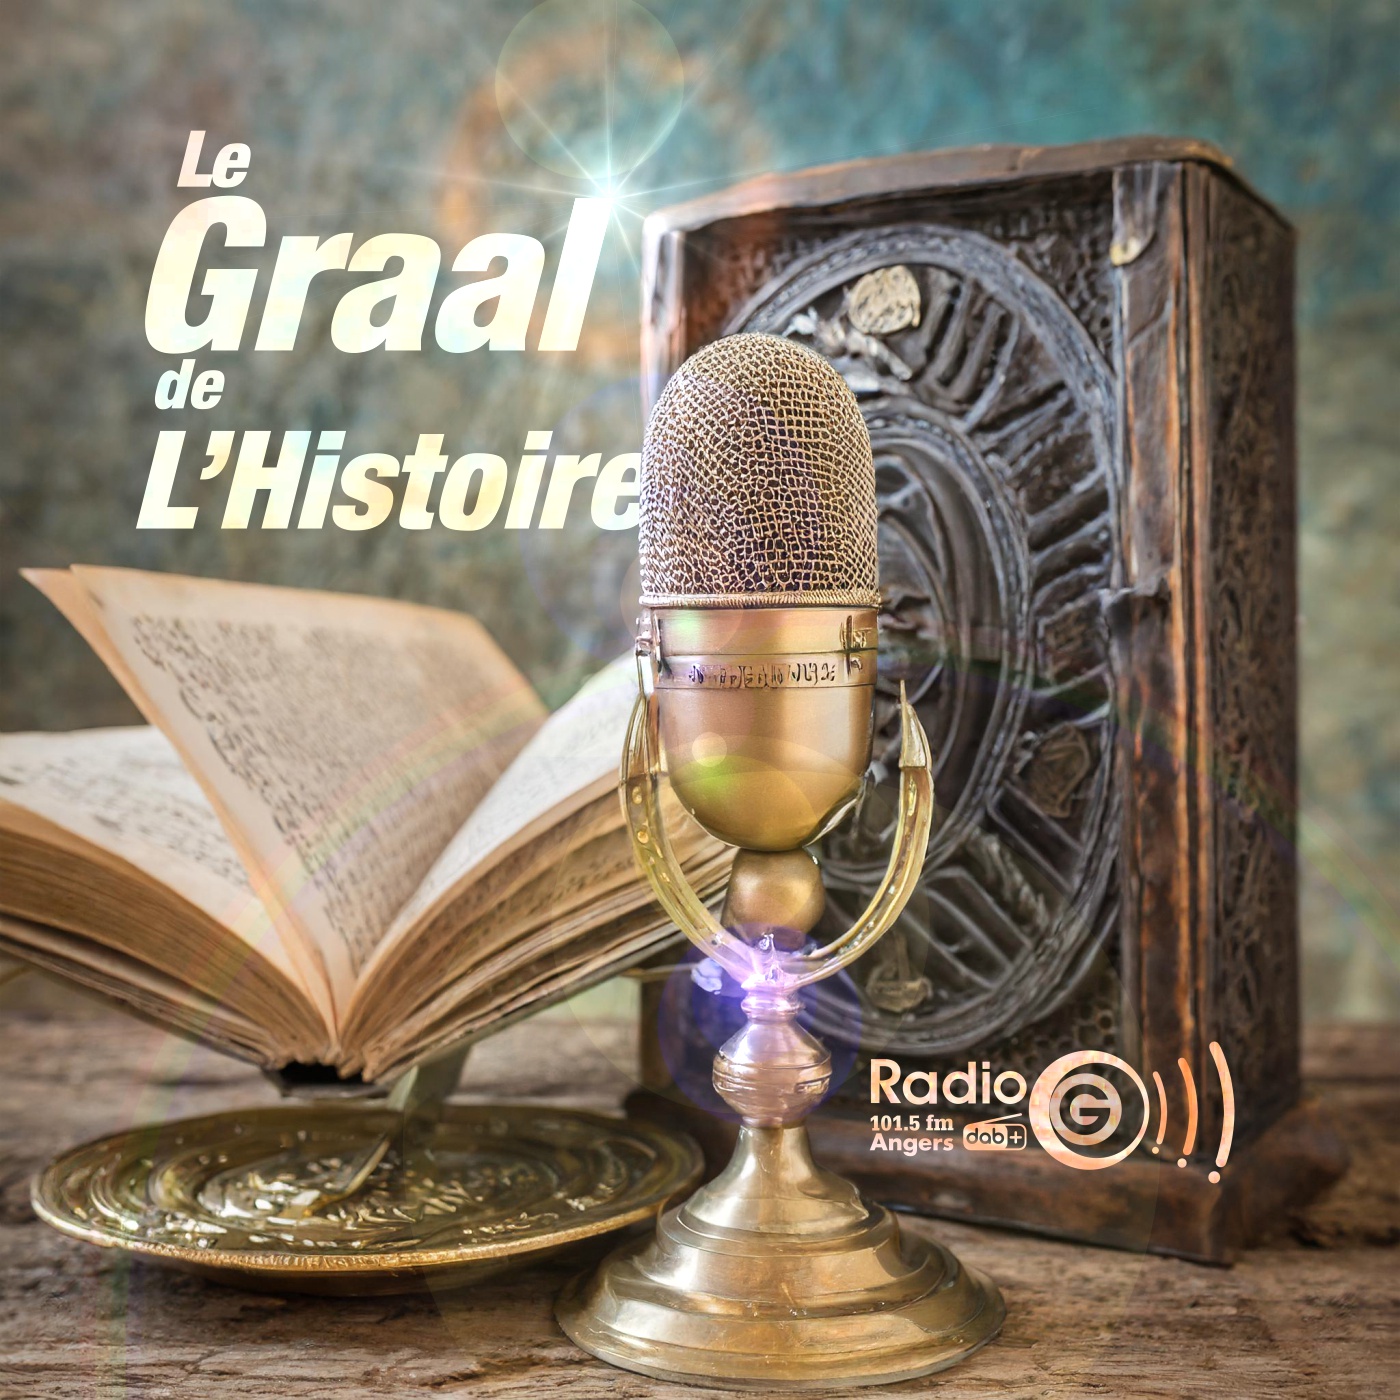 Le Graal de l'histoire, la compile 1 Le Graal de l'Histoire, un podcast avec des voix et des musiques en intelligence artificielles Le Graal de l'histoire, la compile 1